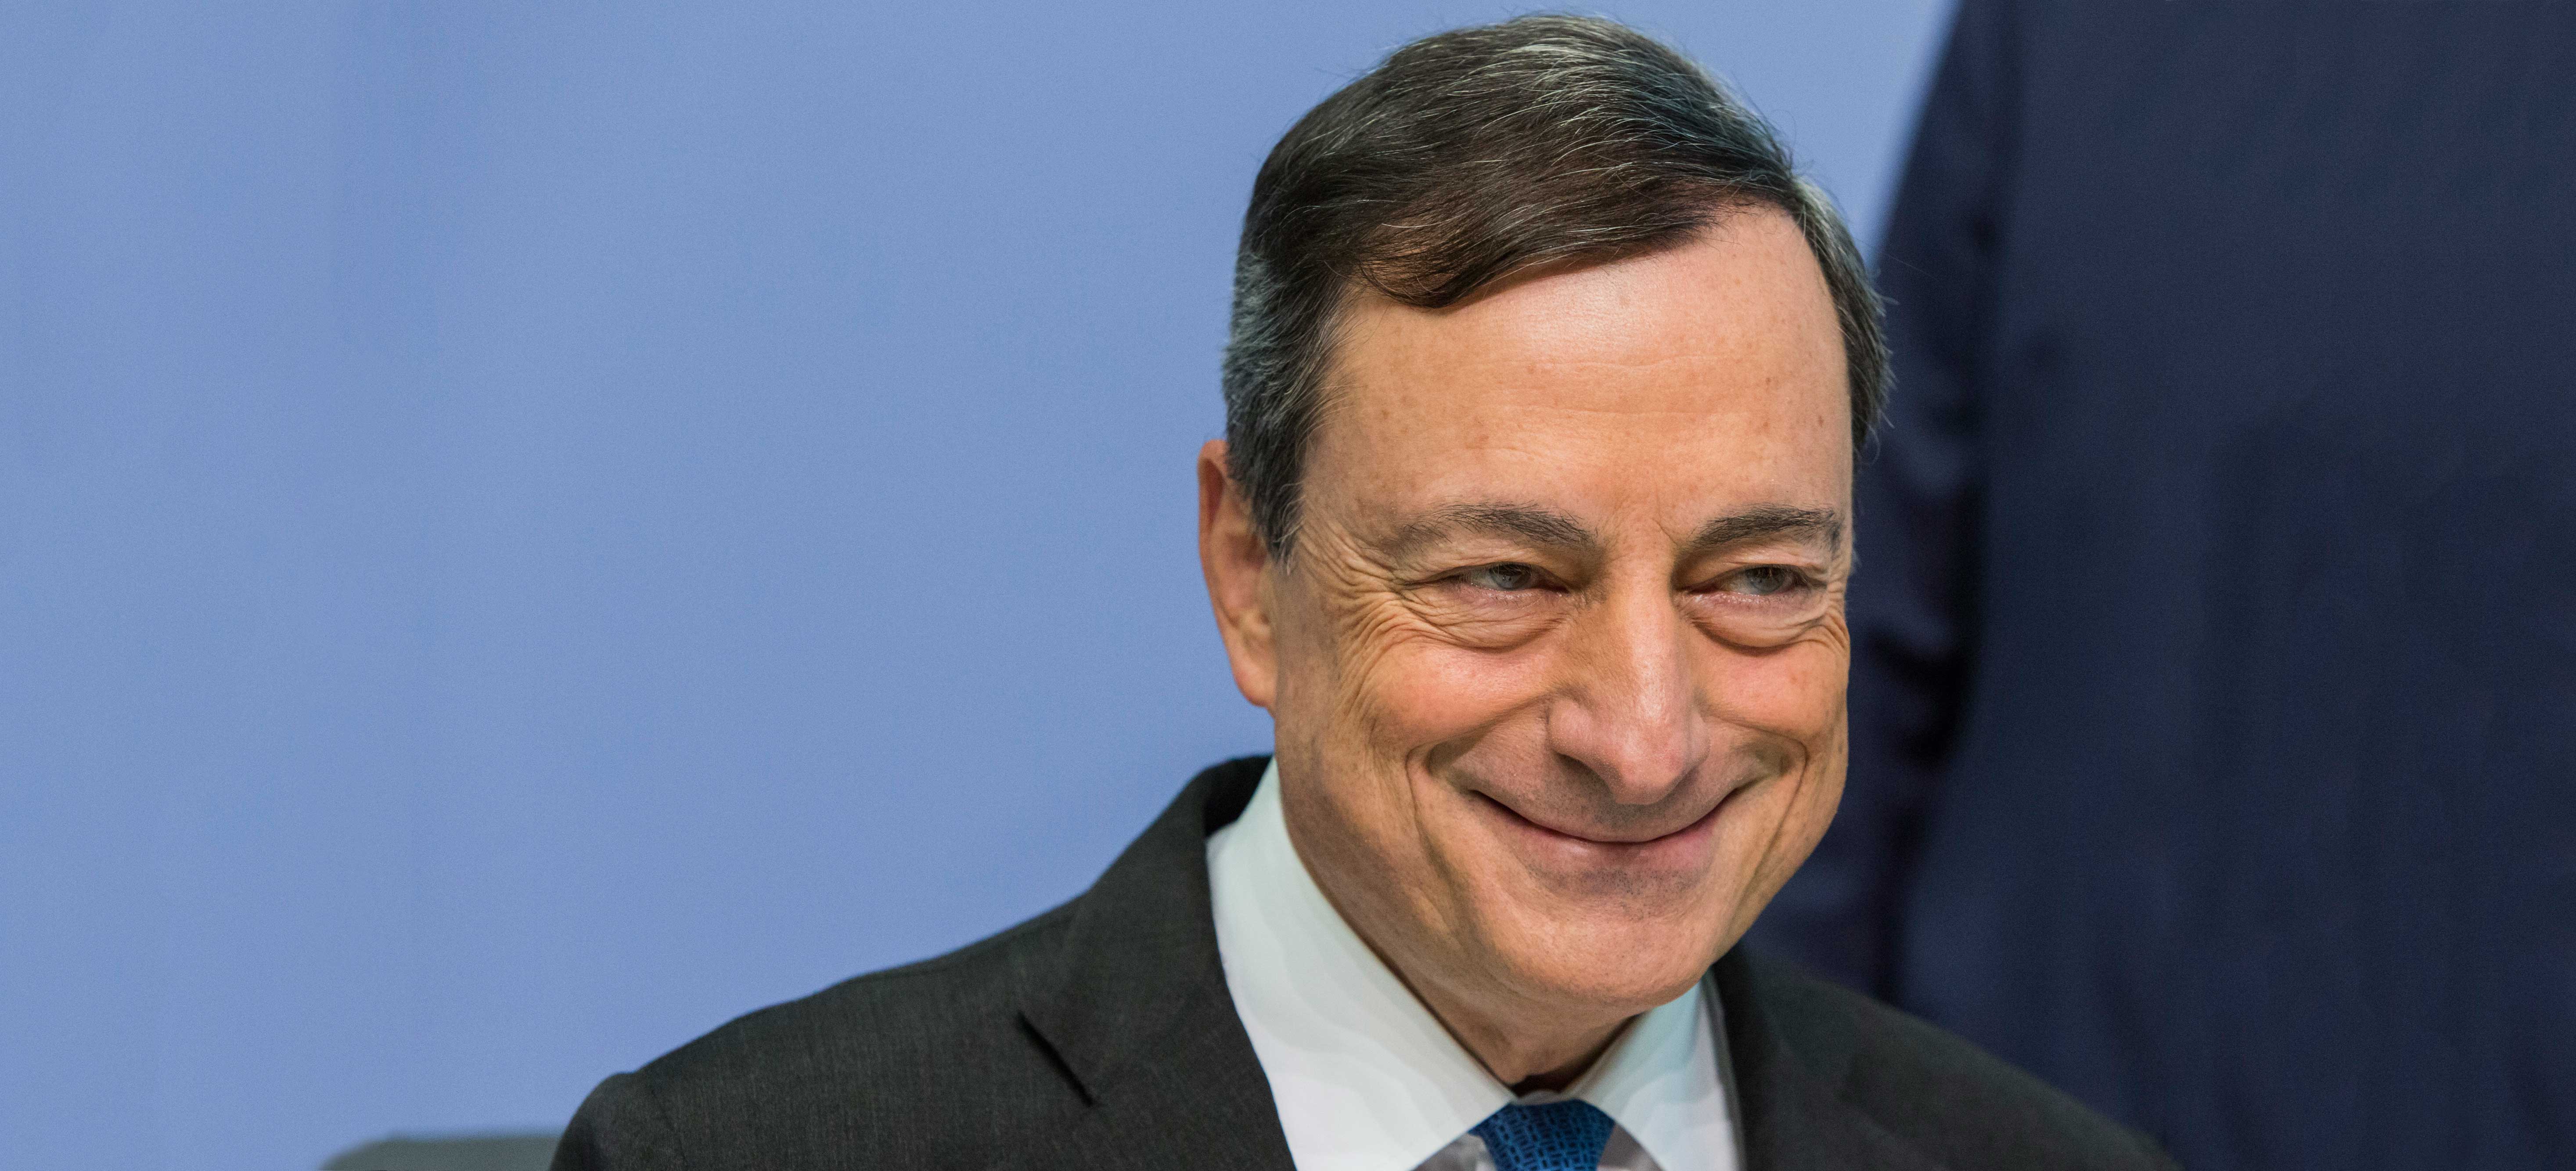 Mario-Draghi-happy_880-400